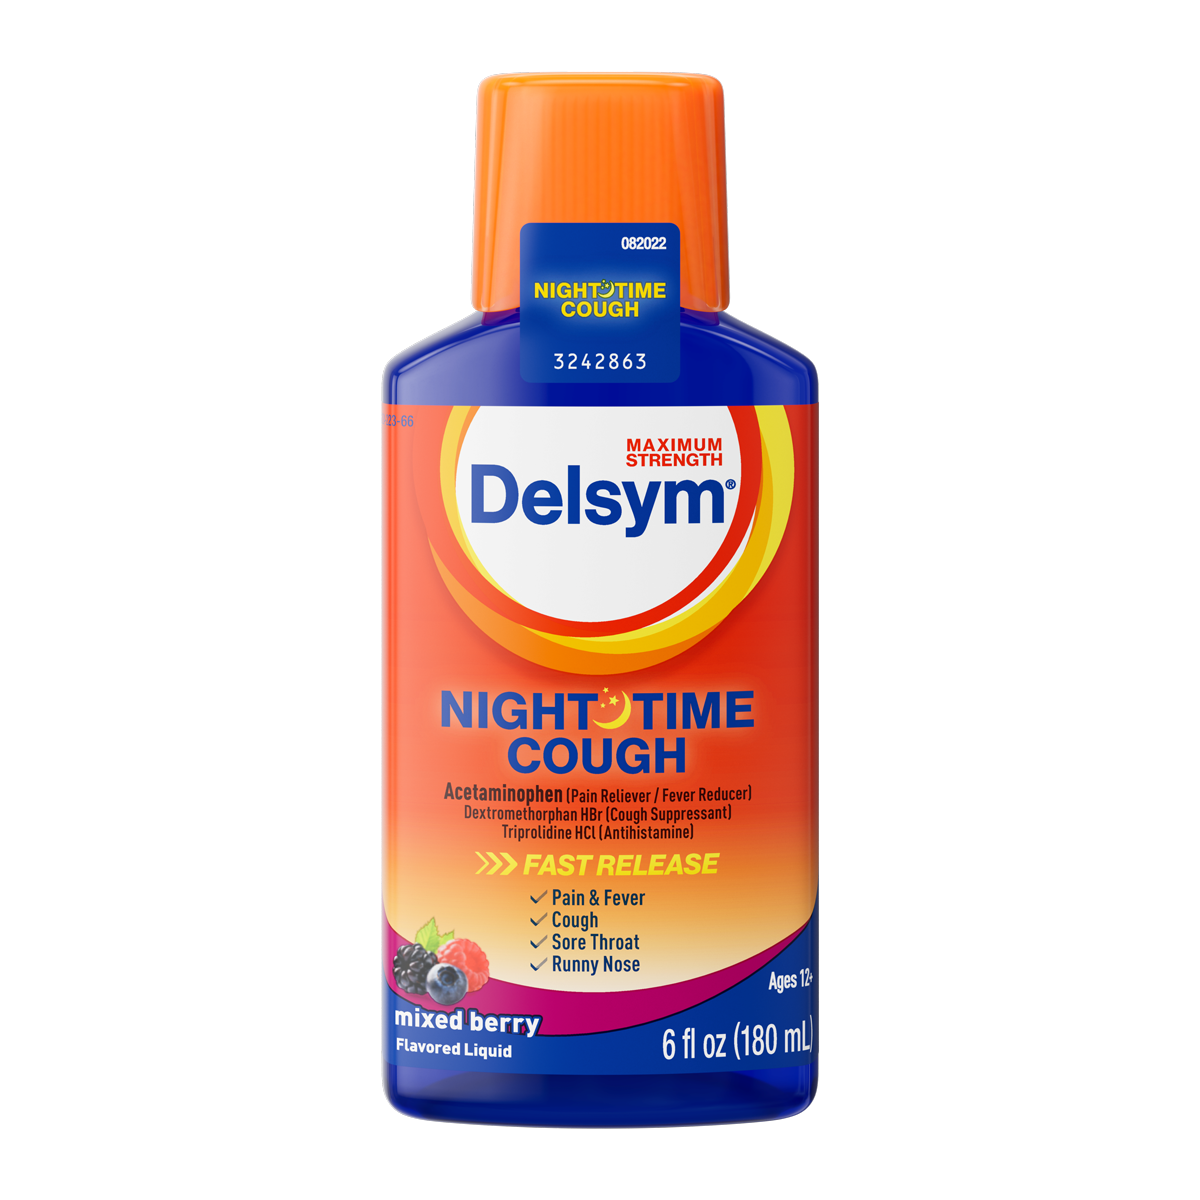 Delsym® Nighttime Cough Liquid